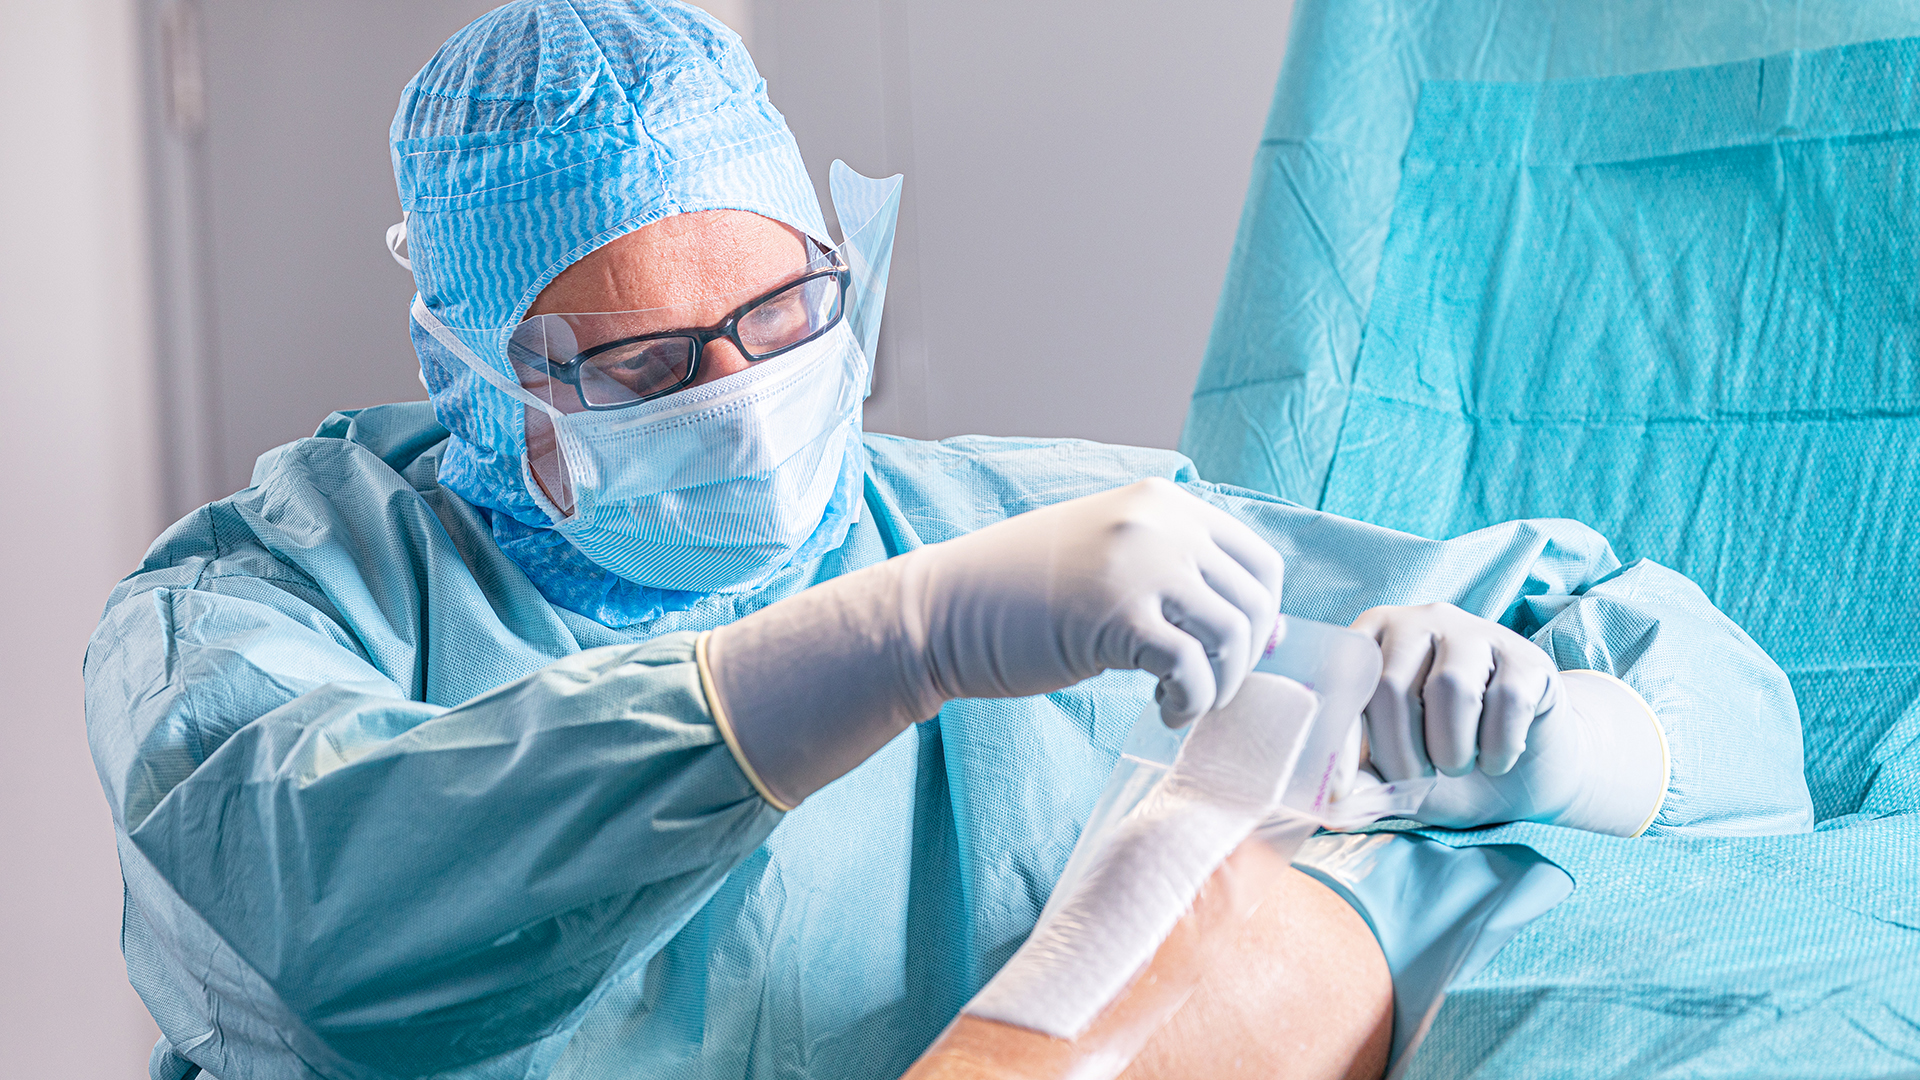 Un médecin vêtu d'une blouse chirurgicale applique un pansement sur une plaie pendant une opération